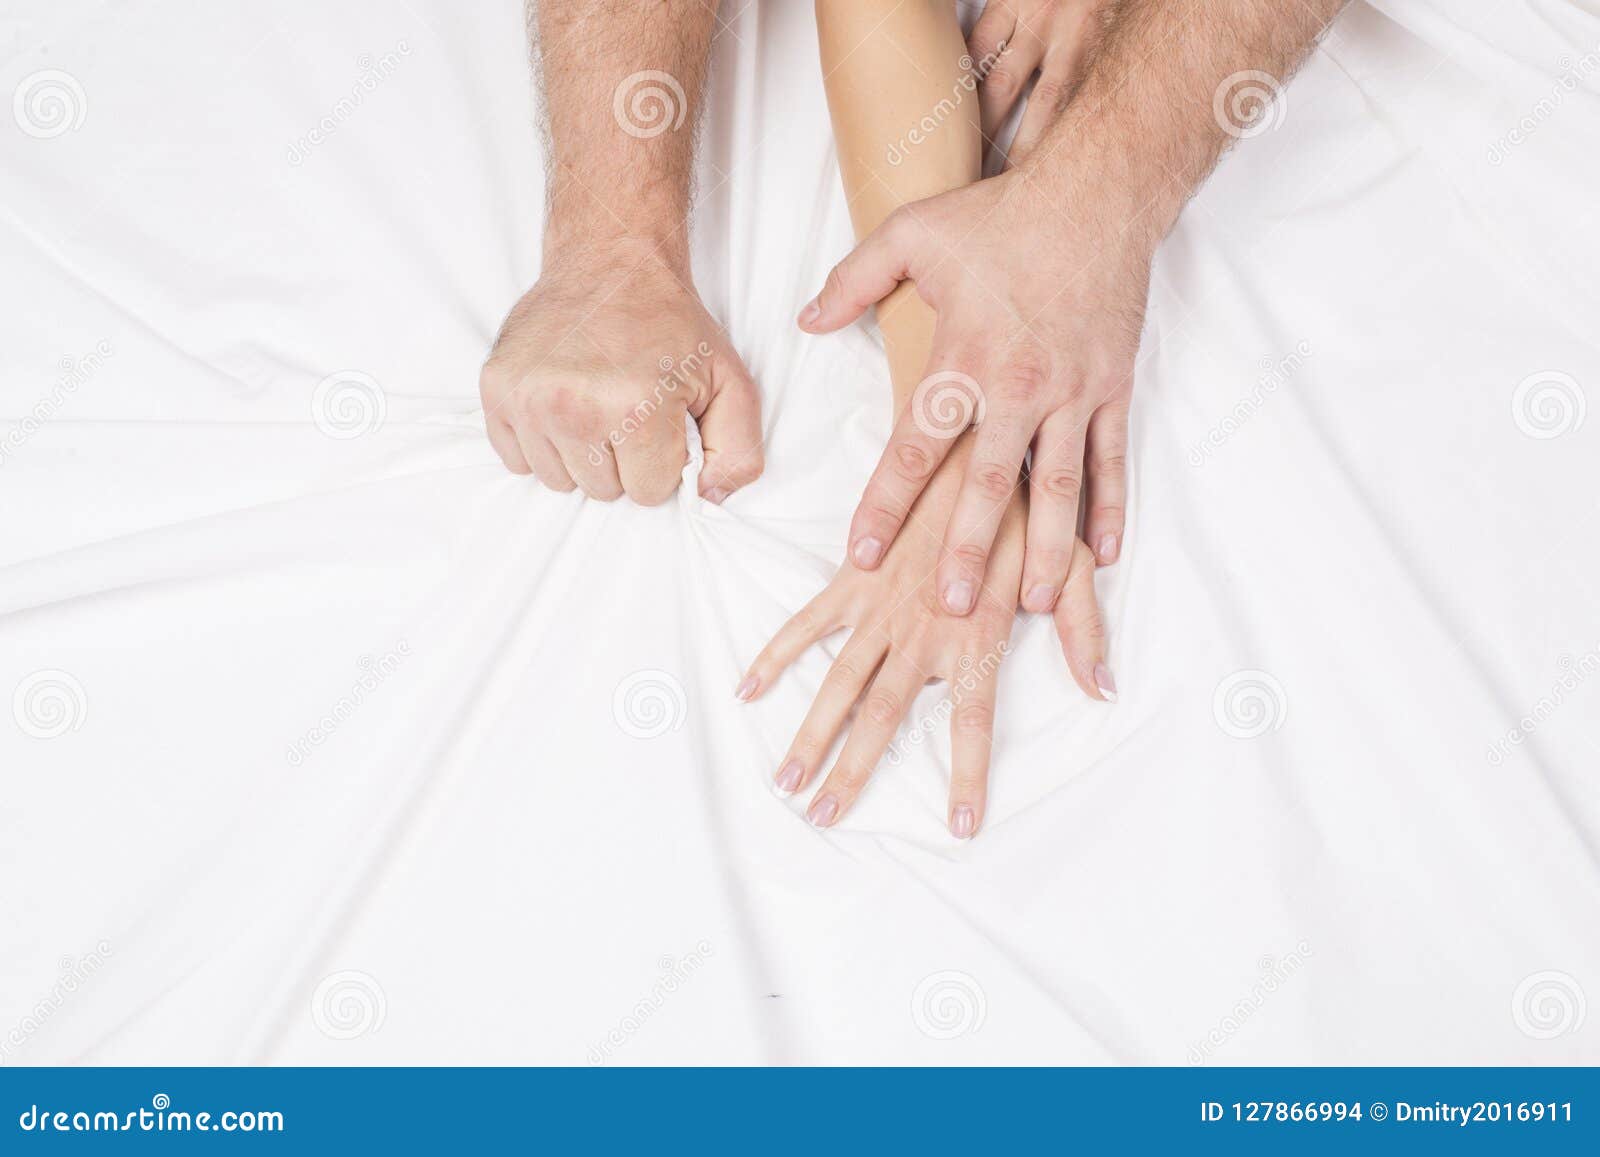 https://thumbs.dreamstime.com/z/main-femelle-tirant-les-feuilles-blanches-dans-l-extase-orgasme-concept-de-passion-moments-%C3%A9rotiques-couples-sexe-bedroom-127866994.jpg